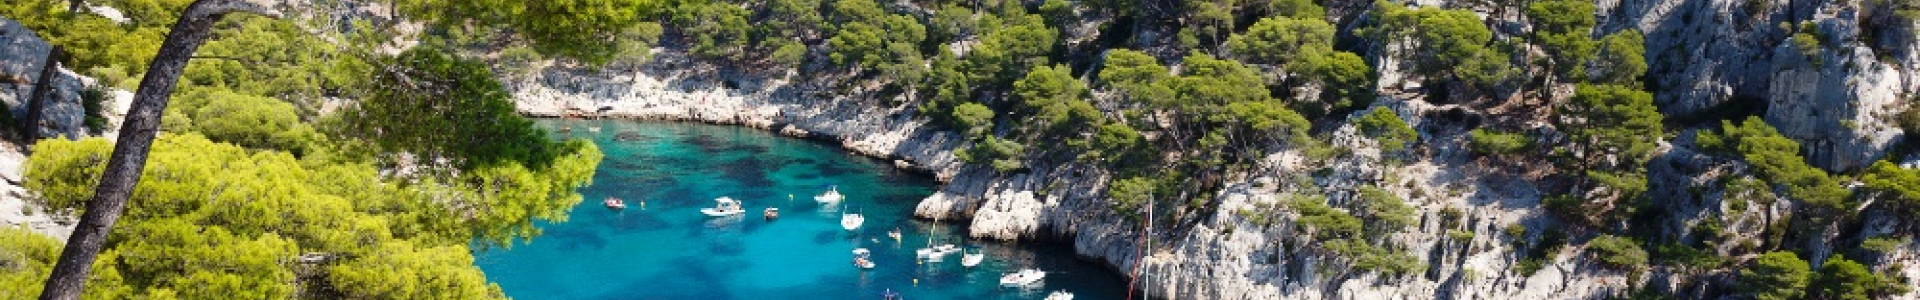 Voyage Privé : ventes flash, week-ends 4* en Provence, 1 à 5 nuits, jusqu'à - 64%